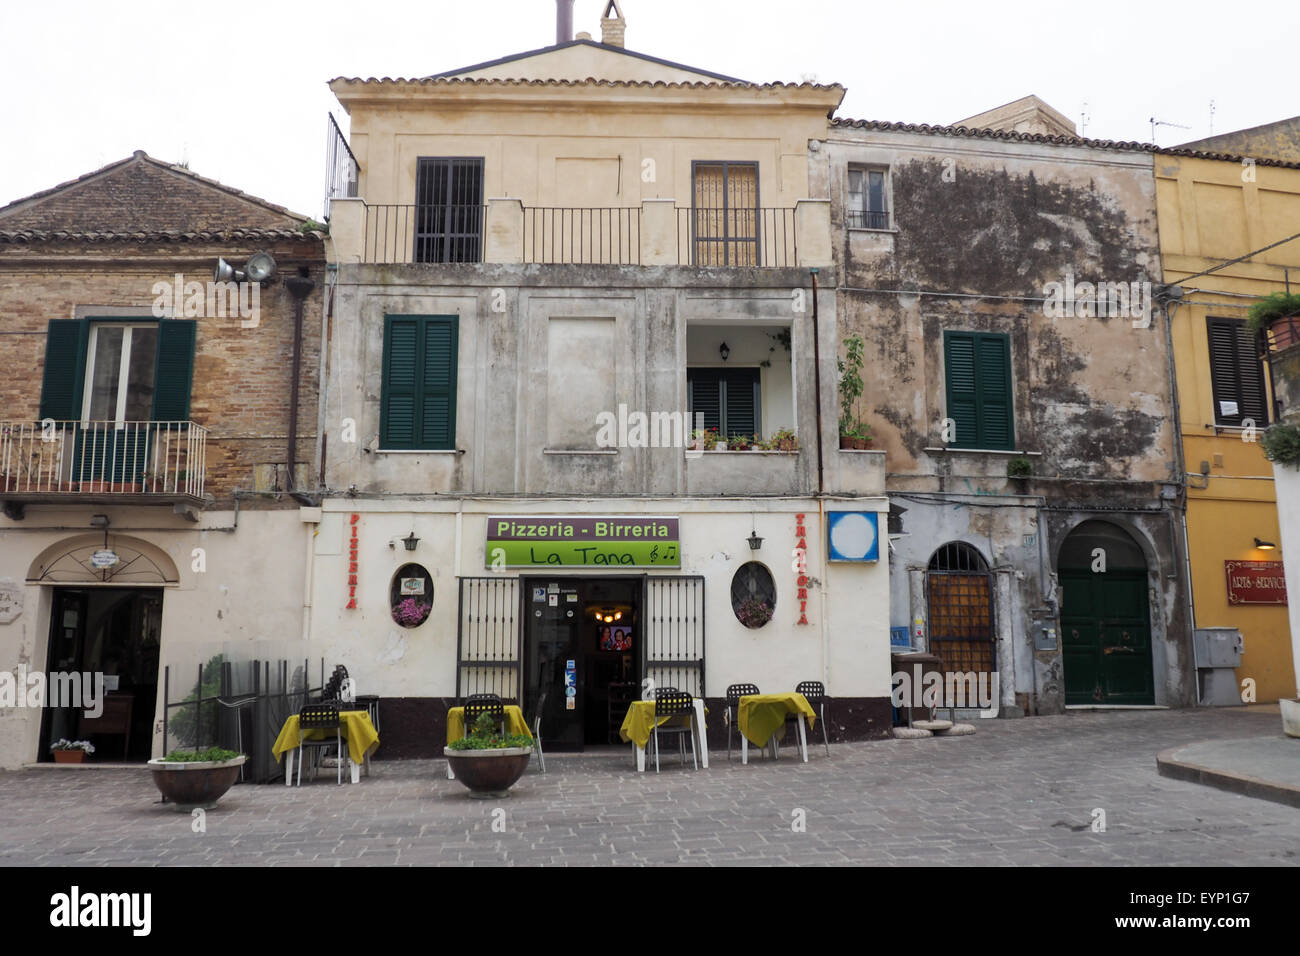 Une pizzeria sur une piazza, Vasto, Abruzzo, Italie. Banque D'Images